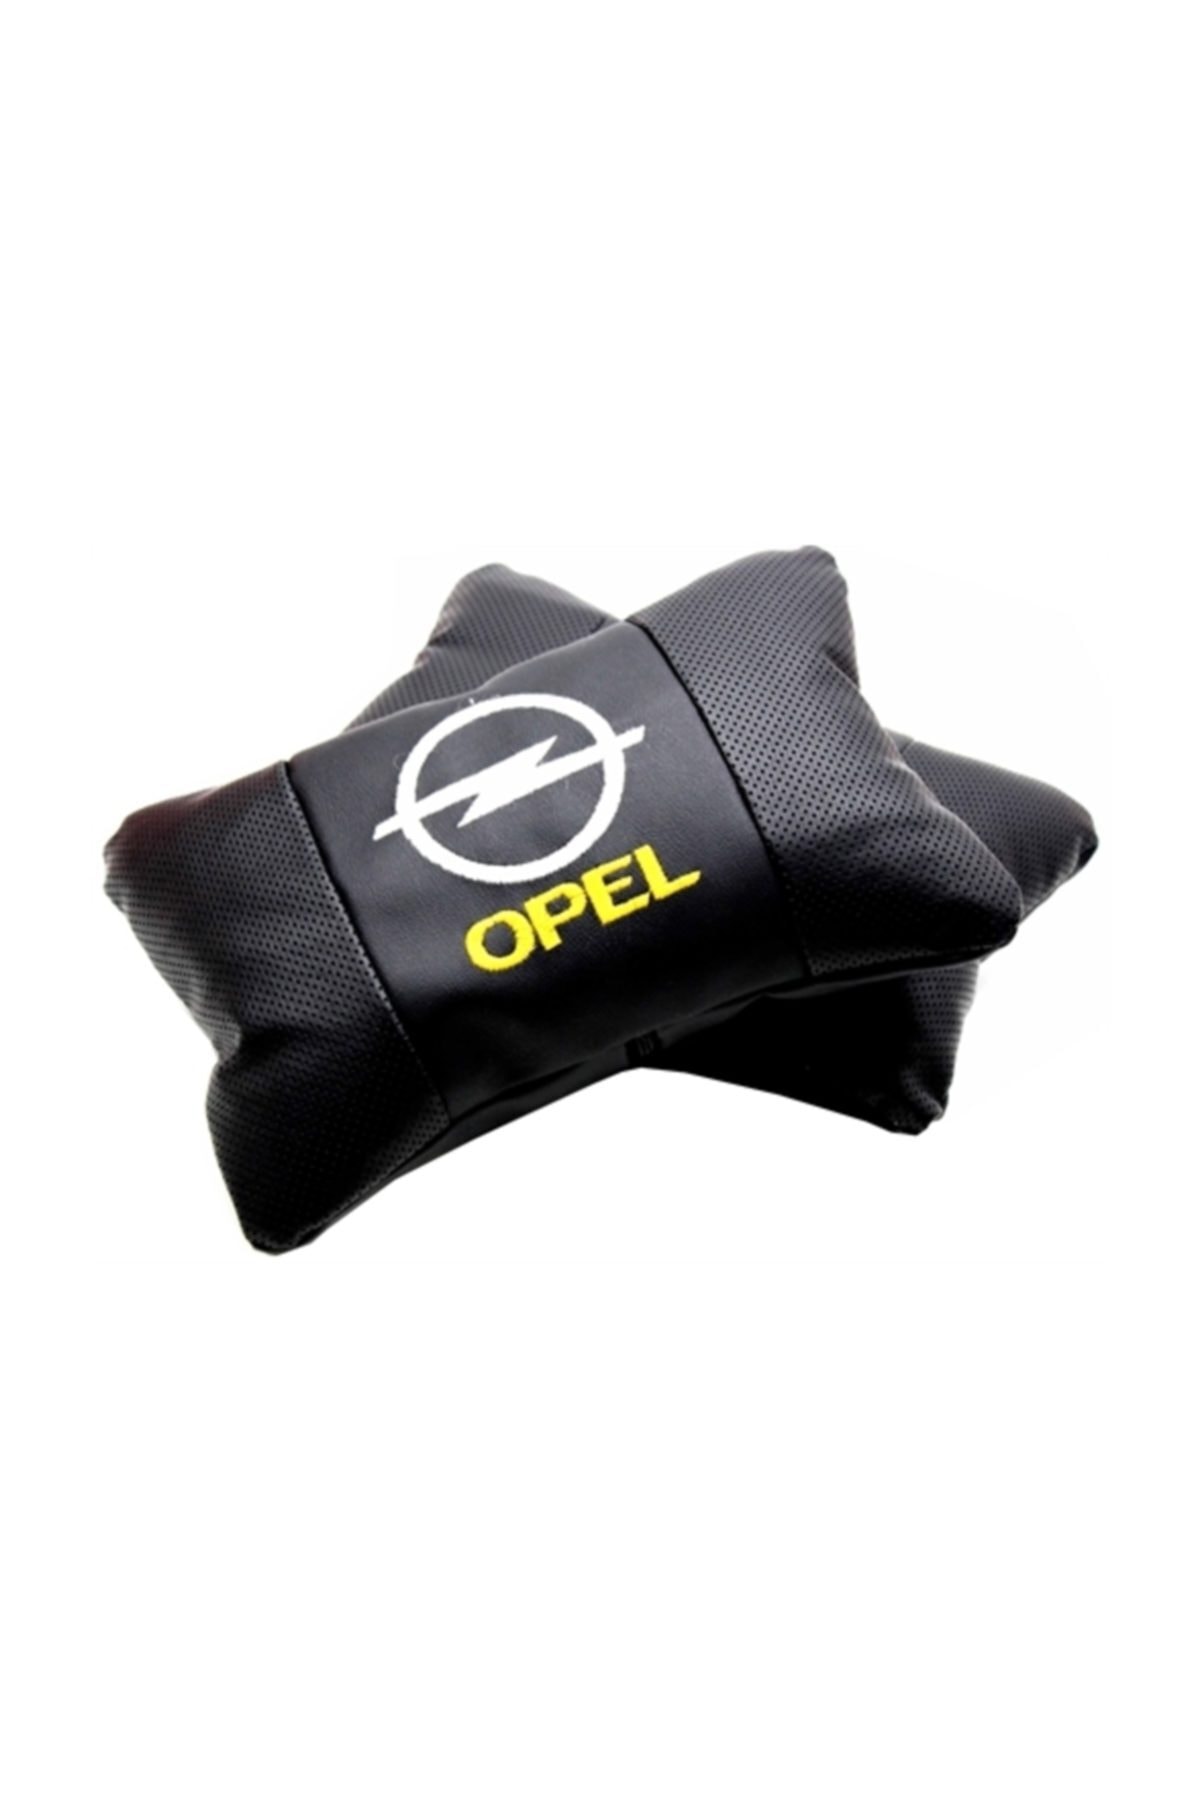 Modacar Opel Logolu Deri Seyahat Boyun Yastığı 422794